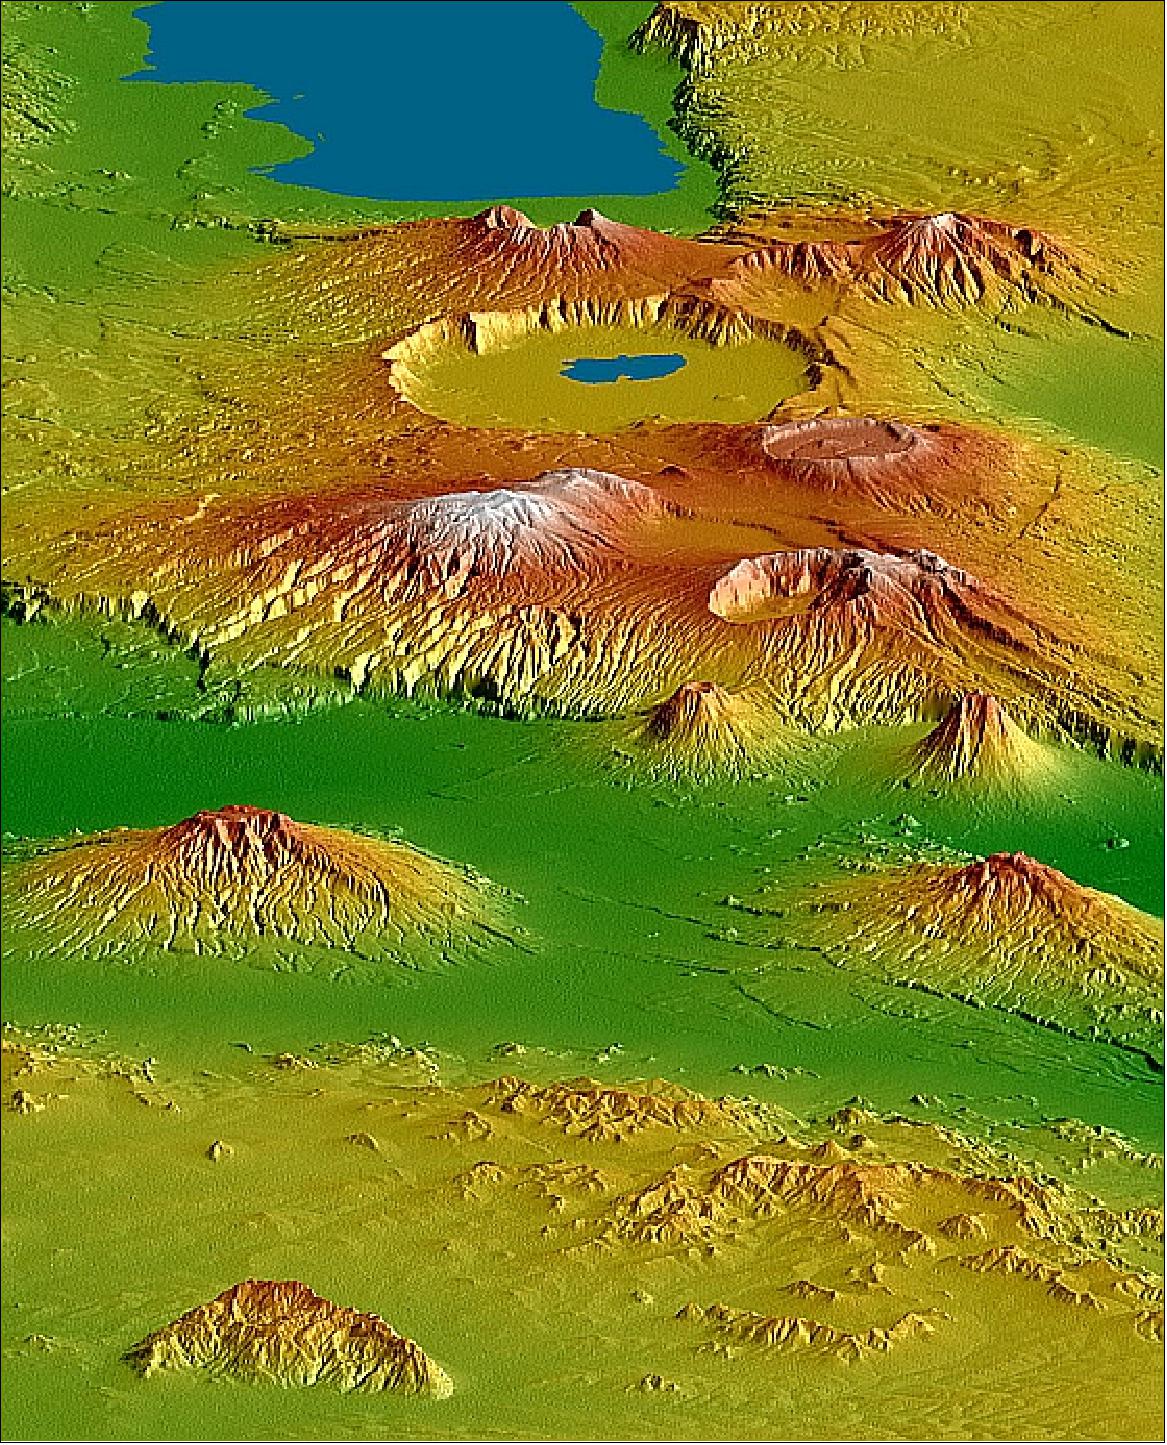 Figure 15: SRTM DEM (Digital Elevation Model) scene of the crater highlands in Tanzania (image credit: NASA/JPL)